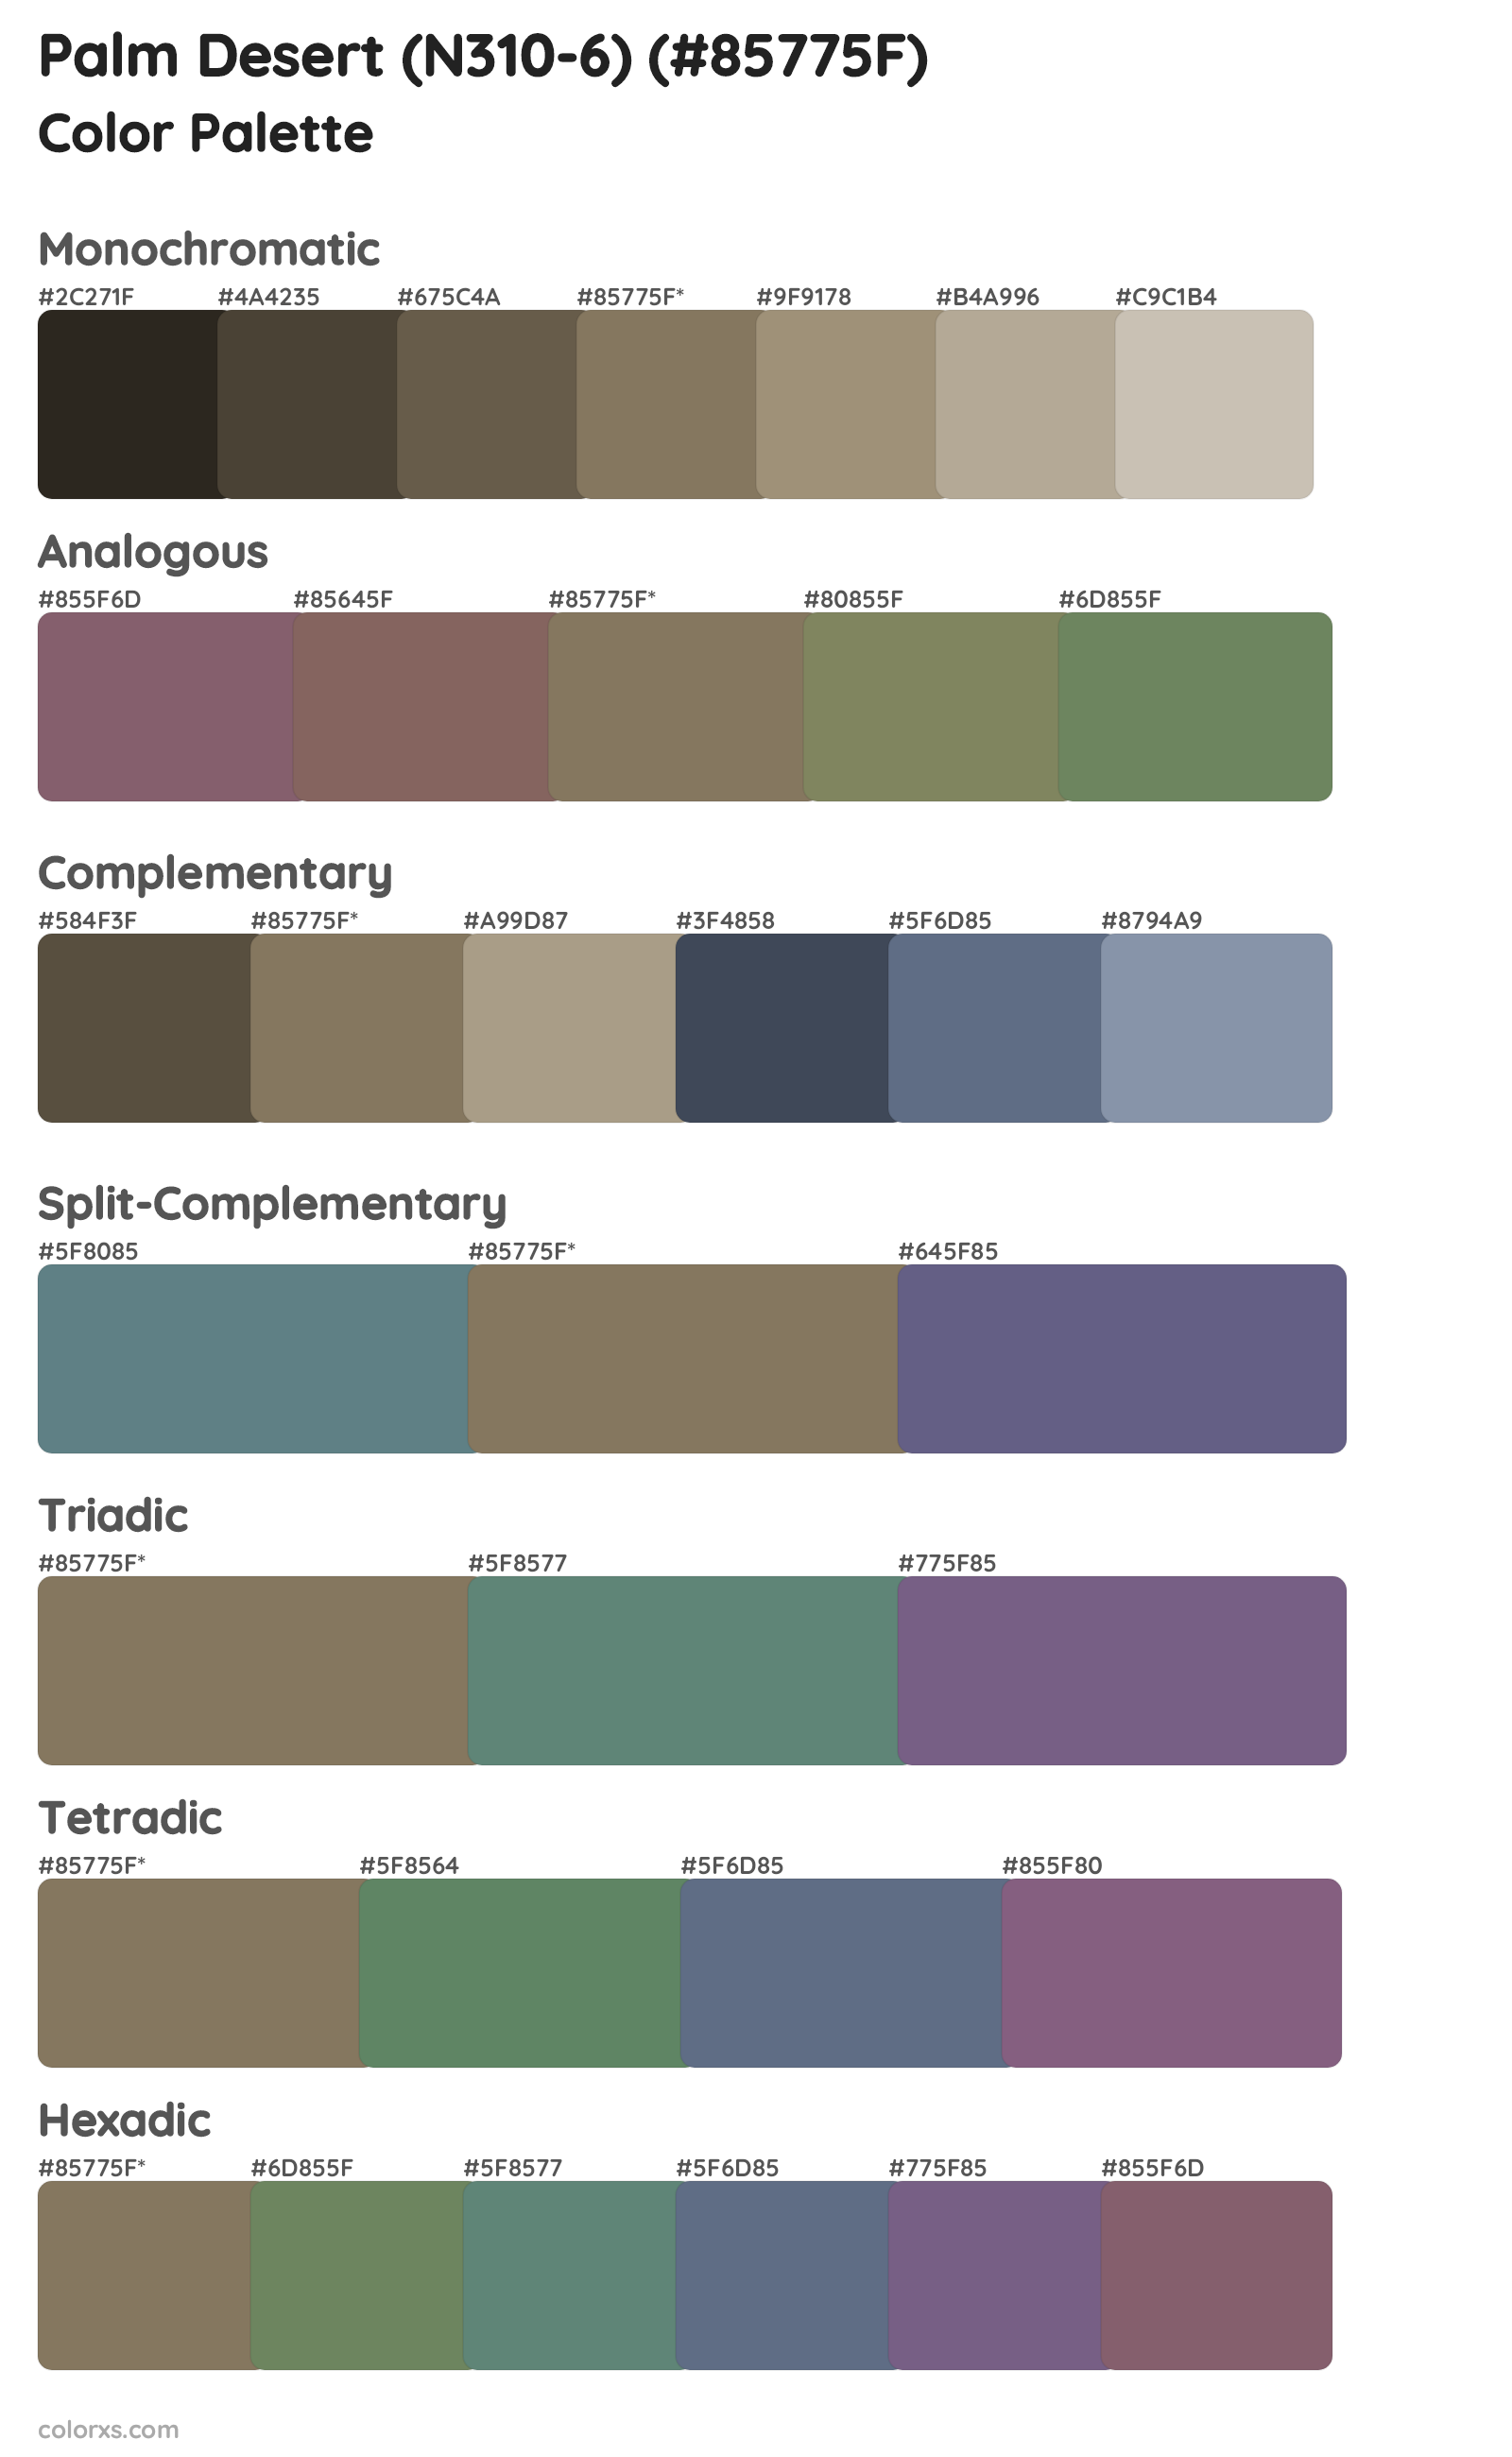 Palm Desert (N310-6) Color Scheme Palettes